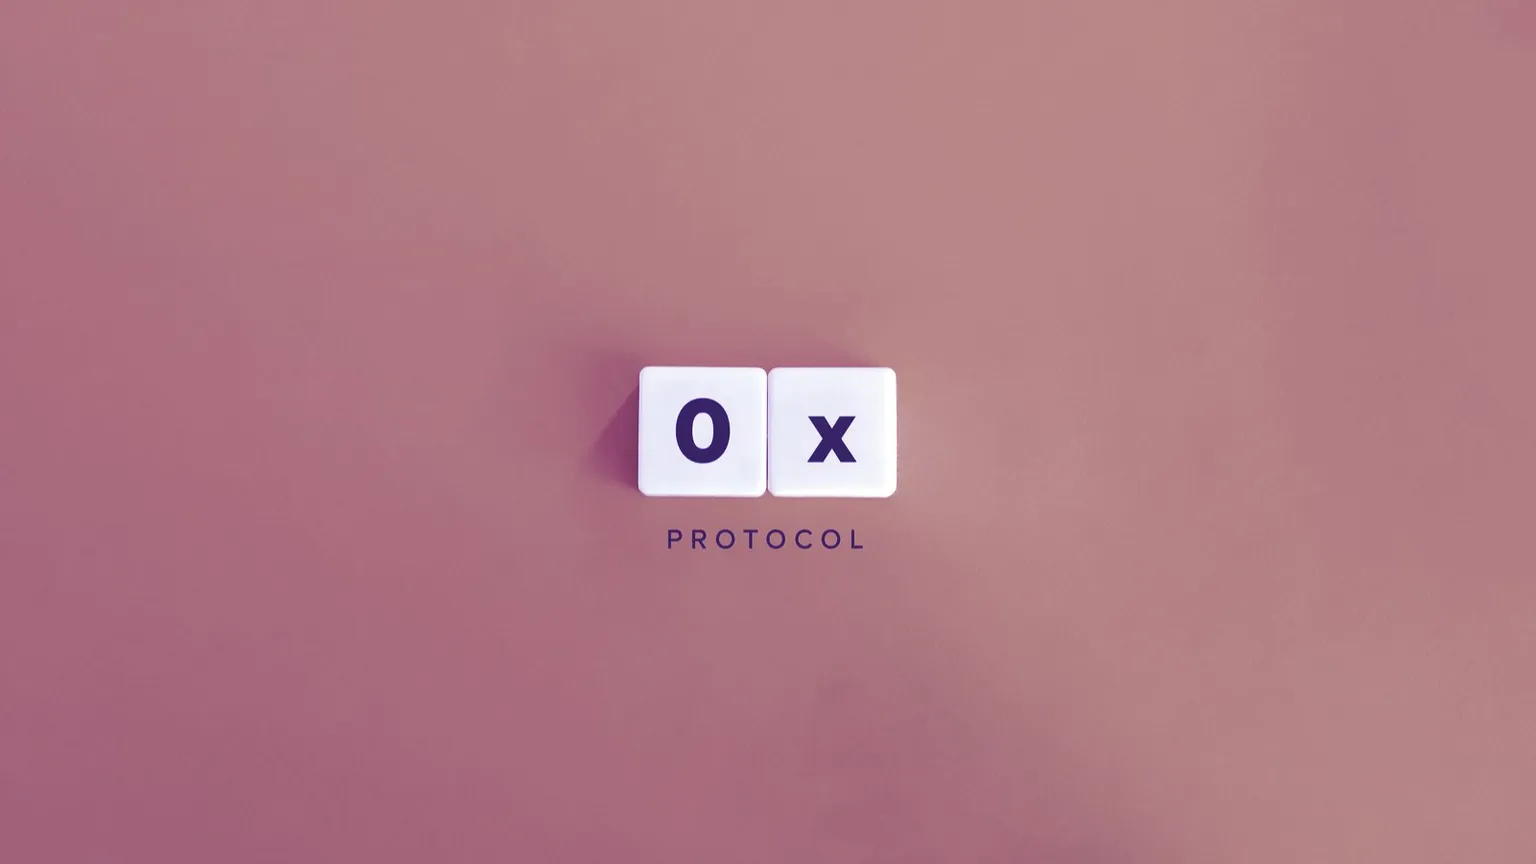 El Protocolo 0x es una plataforma de intercambio descentralizada construida inicialmente sobre Ethereum. Imagen: Shutterstock.